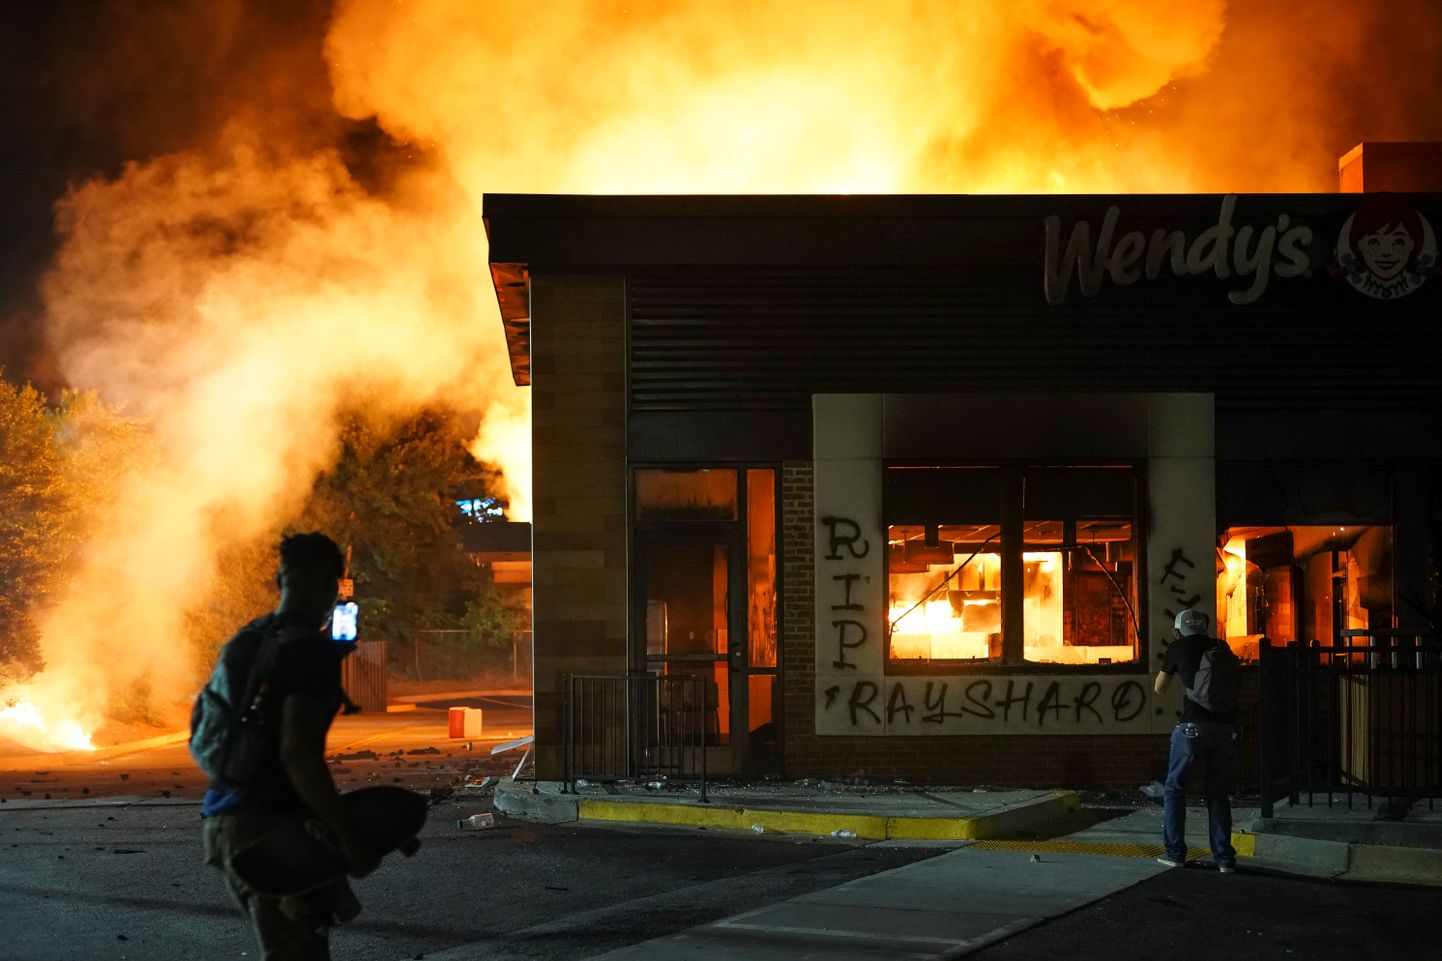 В Атланте протестующие подожгли ресторан, у которого полиция застрелила Рейшарда Брукса.